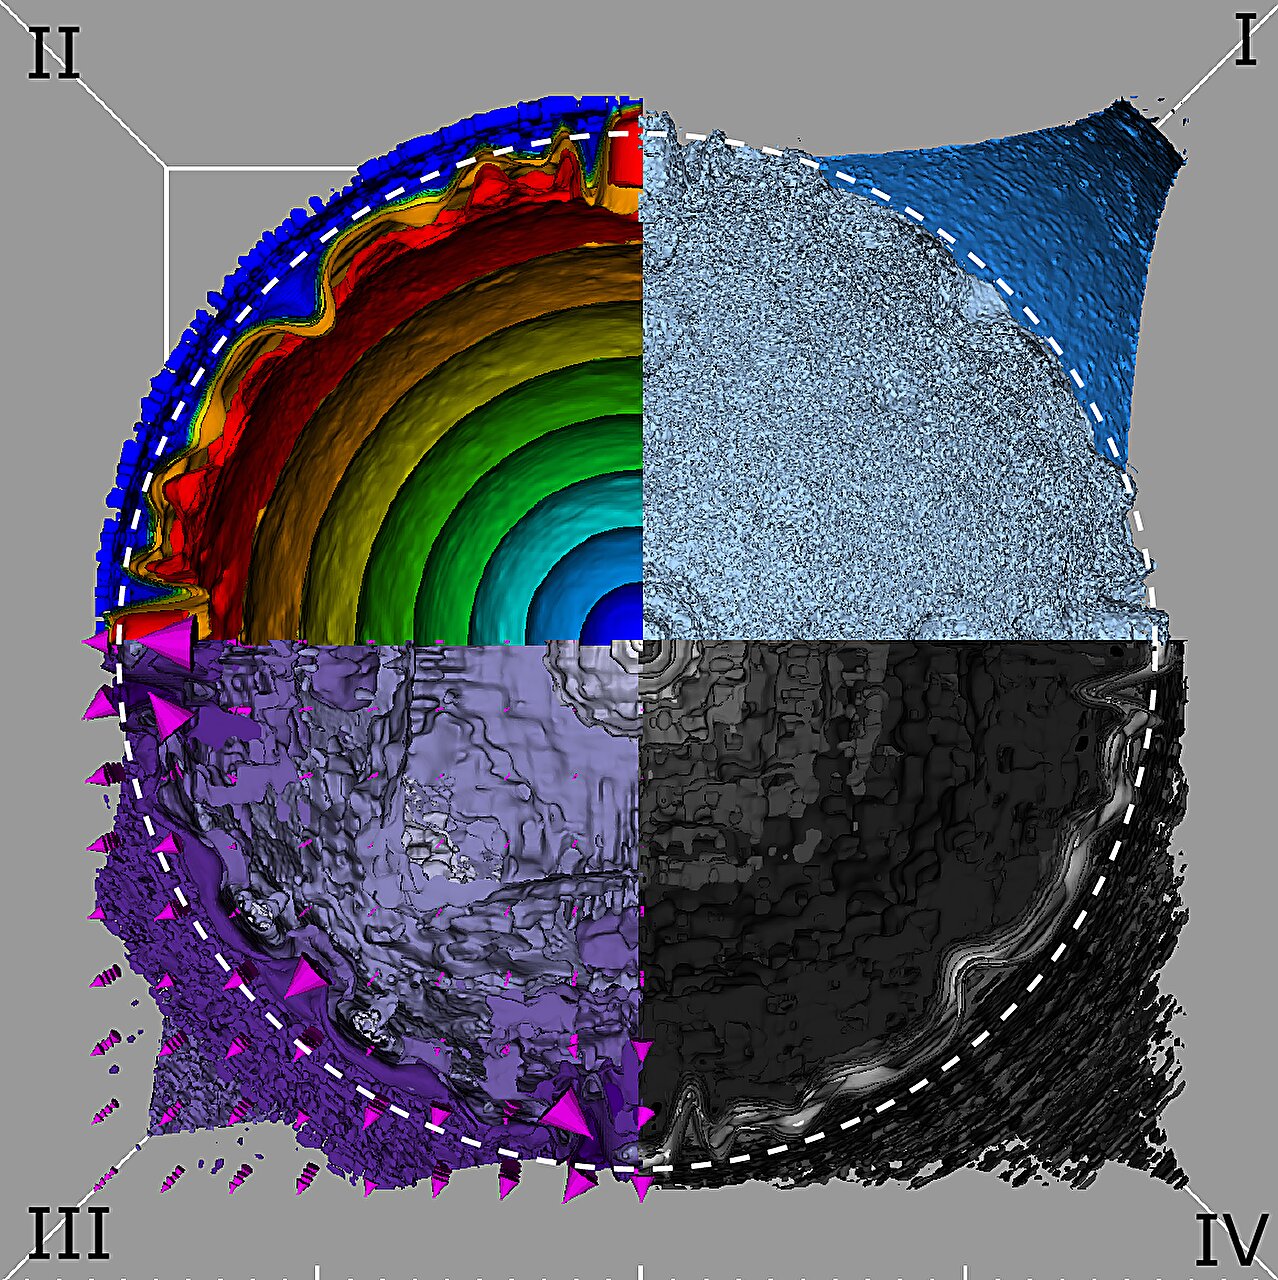 Las distribuciones físicas finales de la supernova exótica, con cuatro cuadrantes de color distintos que representan diferentes magnitudes físicas: I. temperatura, II. velocidad, III. densidad de energía radiativa y IV. densidad del gas. El círculo blanco discontinuo indica la posición de la fotosfera de la supernova. En esta imagen, toda la estrella se vuelve turbulenta desde el interior hacia el exterior. Las posiciones en las que chocan los materiales eyectados coinciden estrechamente con la fotosfera, lo que indica la producción de radiación térmica durante estas colisiones, que se propaga eficazmente hacia el exterior y crea simultáneamente una capa de gas irregular. Esta imagen nos ayuda a comprender la física subyacente de las supernovas exóticas y proporciona una explicación de los fenómenos observados. Crédito: Ke-Jung Chen/ASIAA